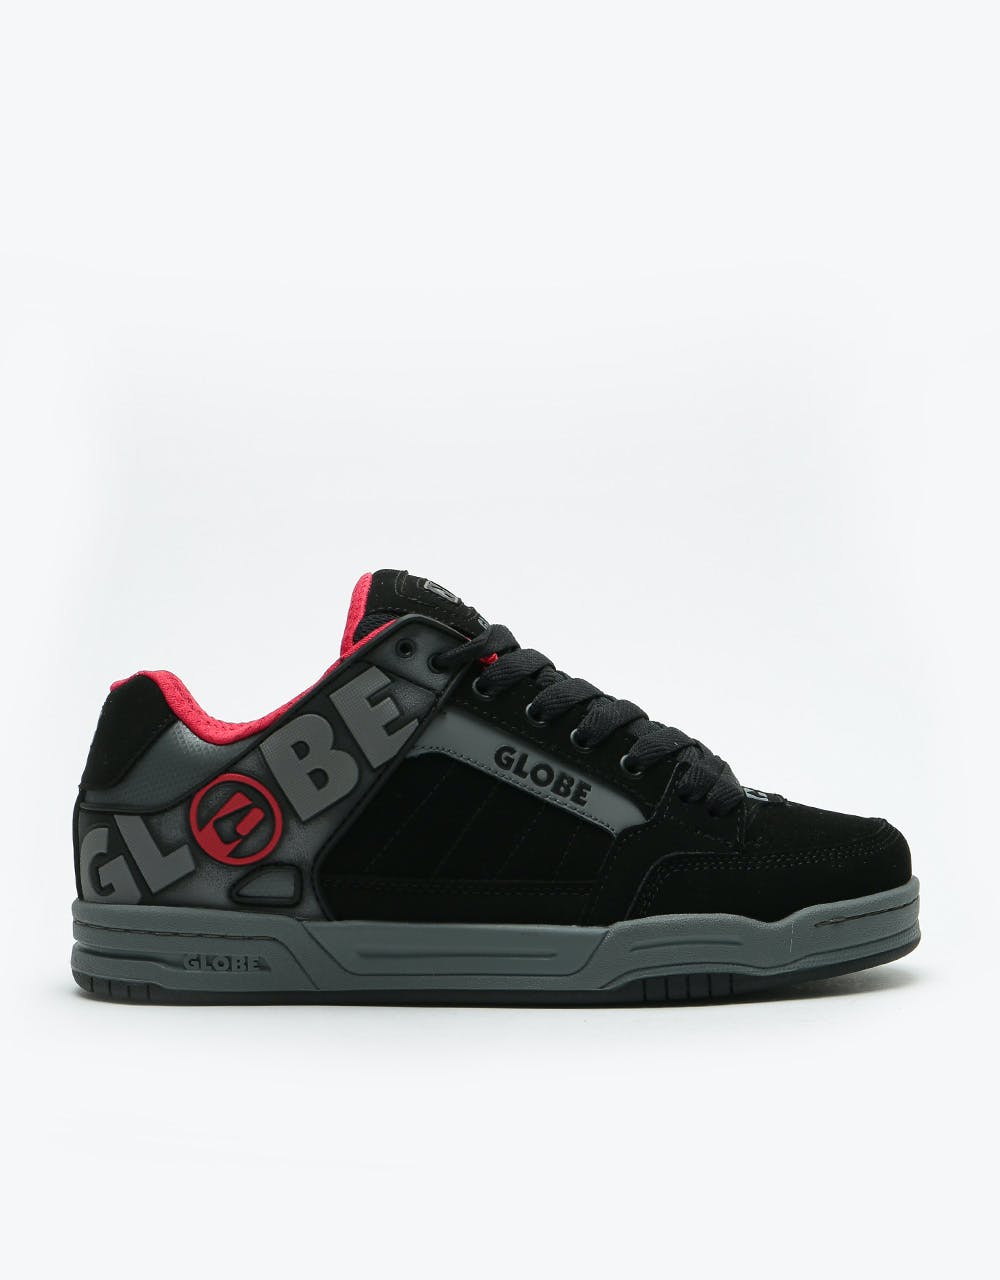 Globe Tilt Skate Shoes - Black/Carbon Red